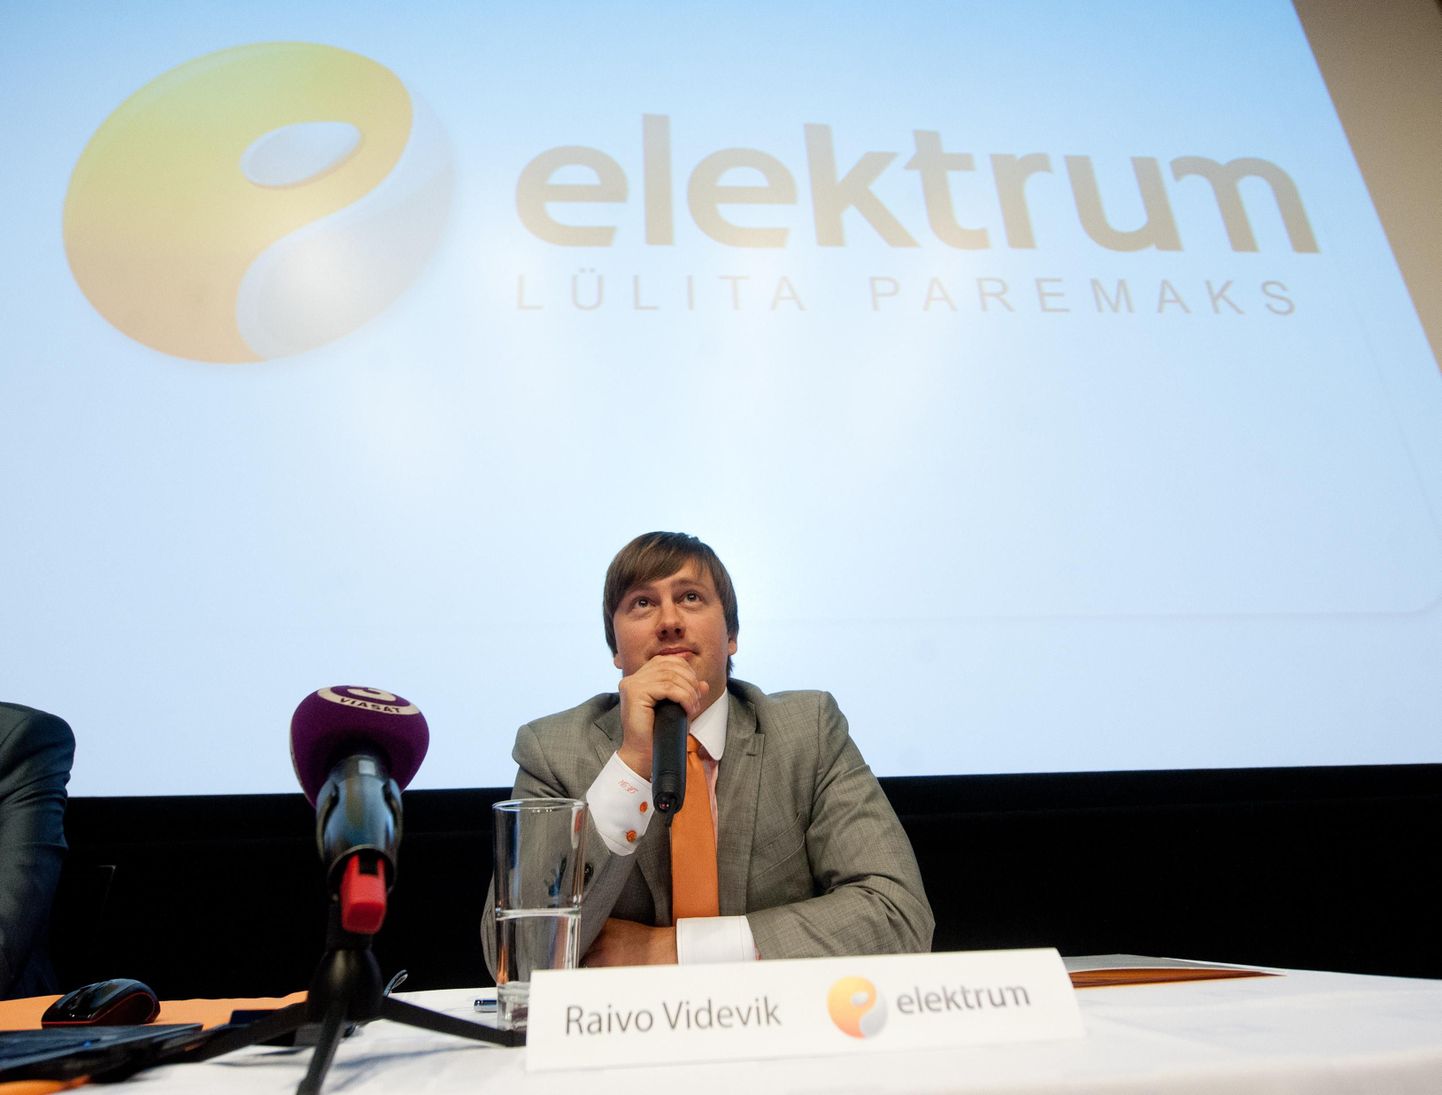 Latvenergo-Elektrumi pressikonverents, pildil Elektrum Eesti juht Raivo Videvik